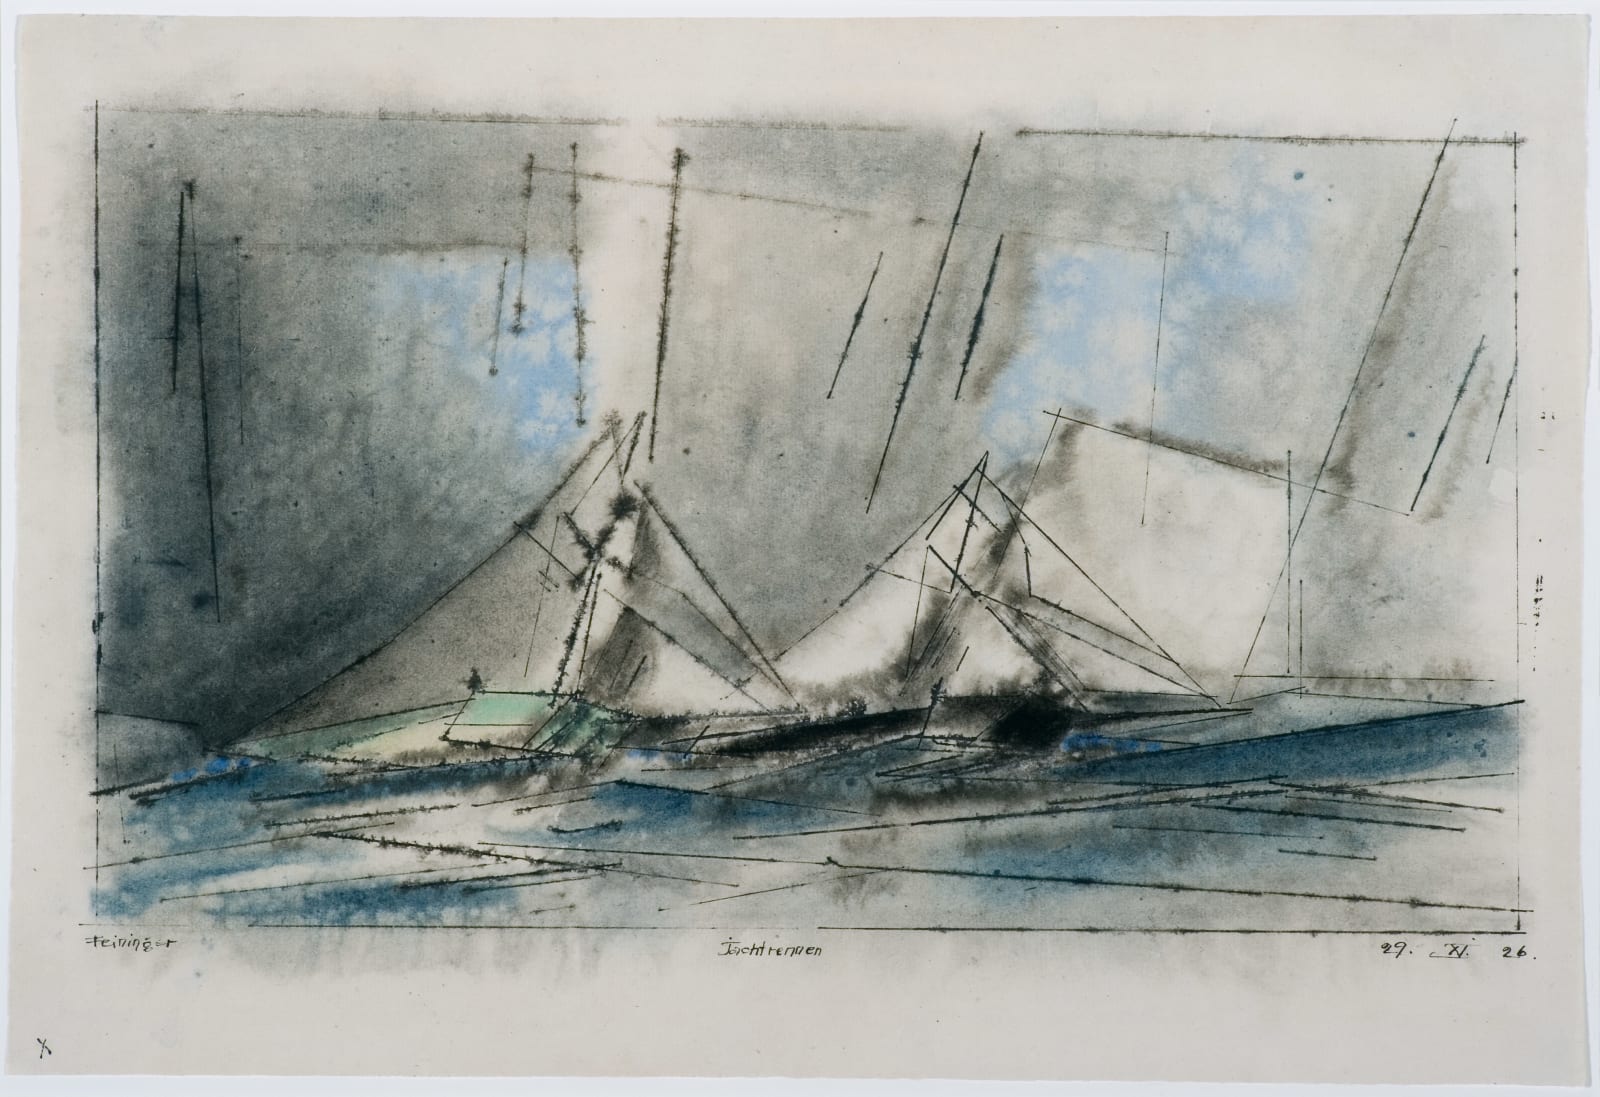 LYONEL FEININGER, Jachtrennen, 1926